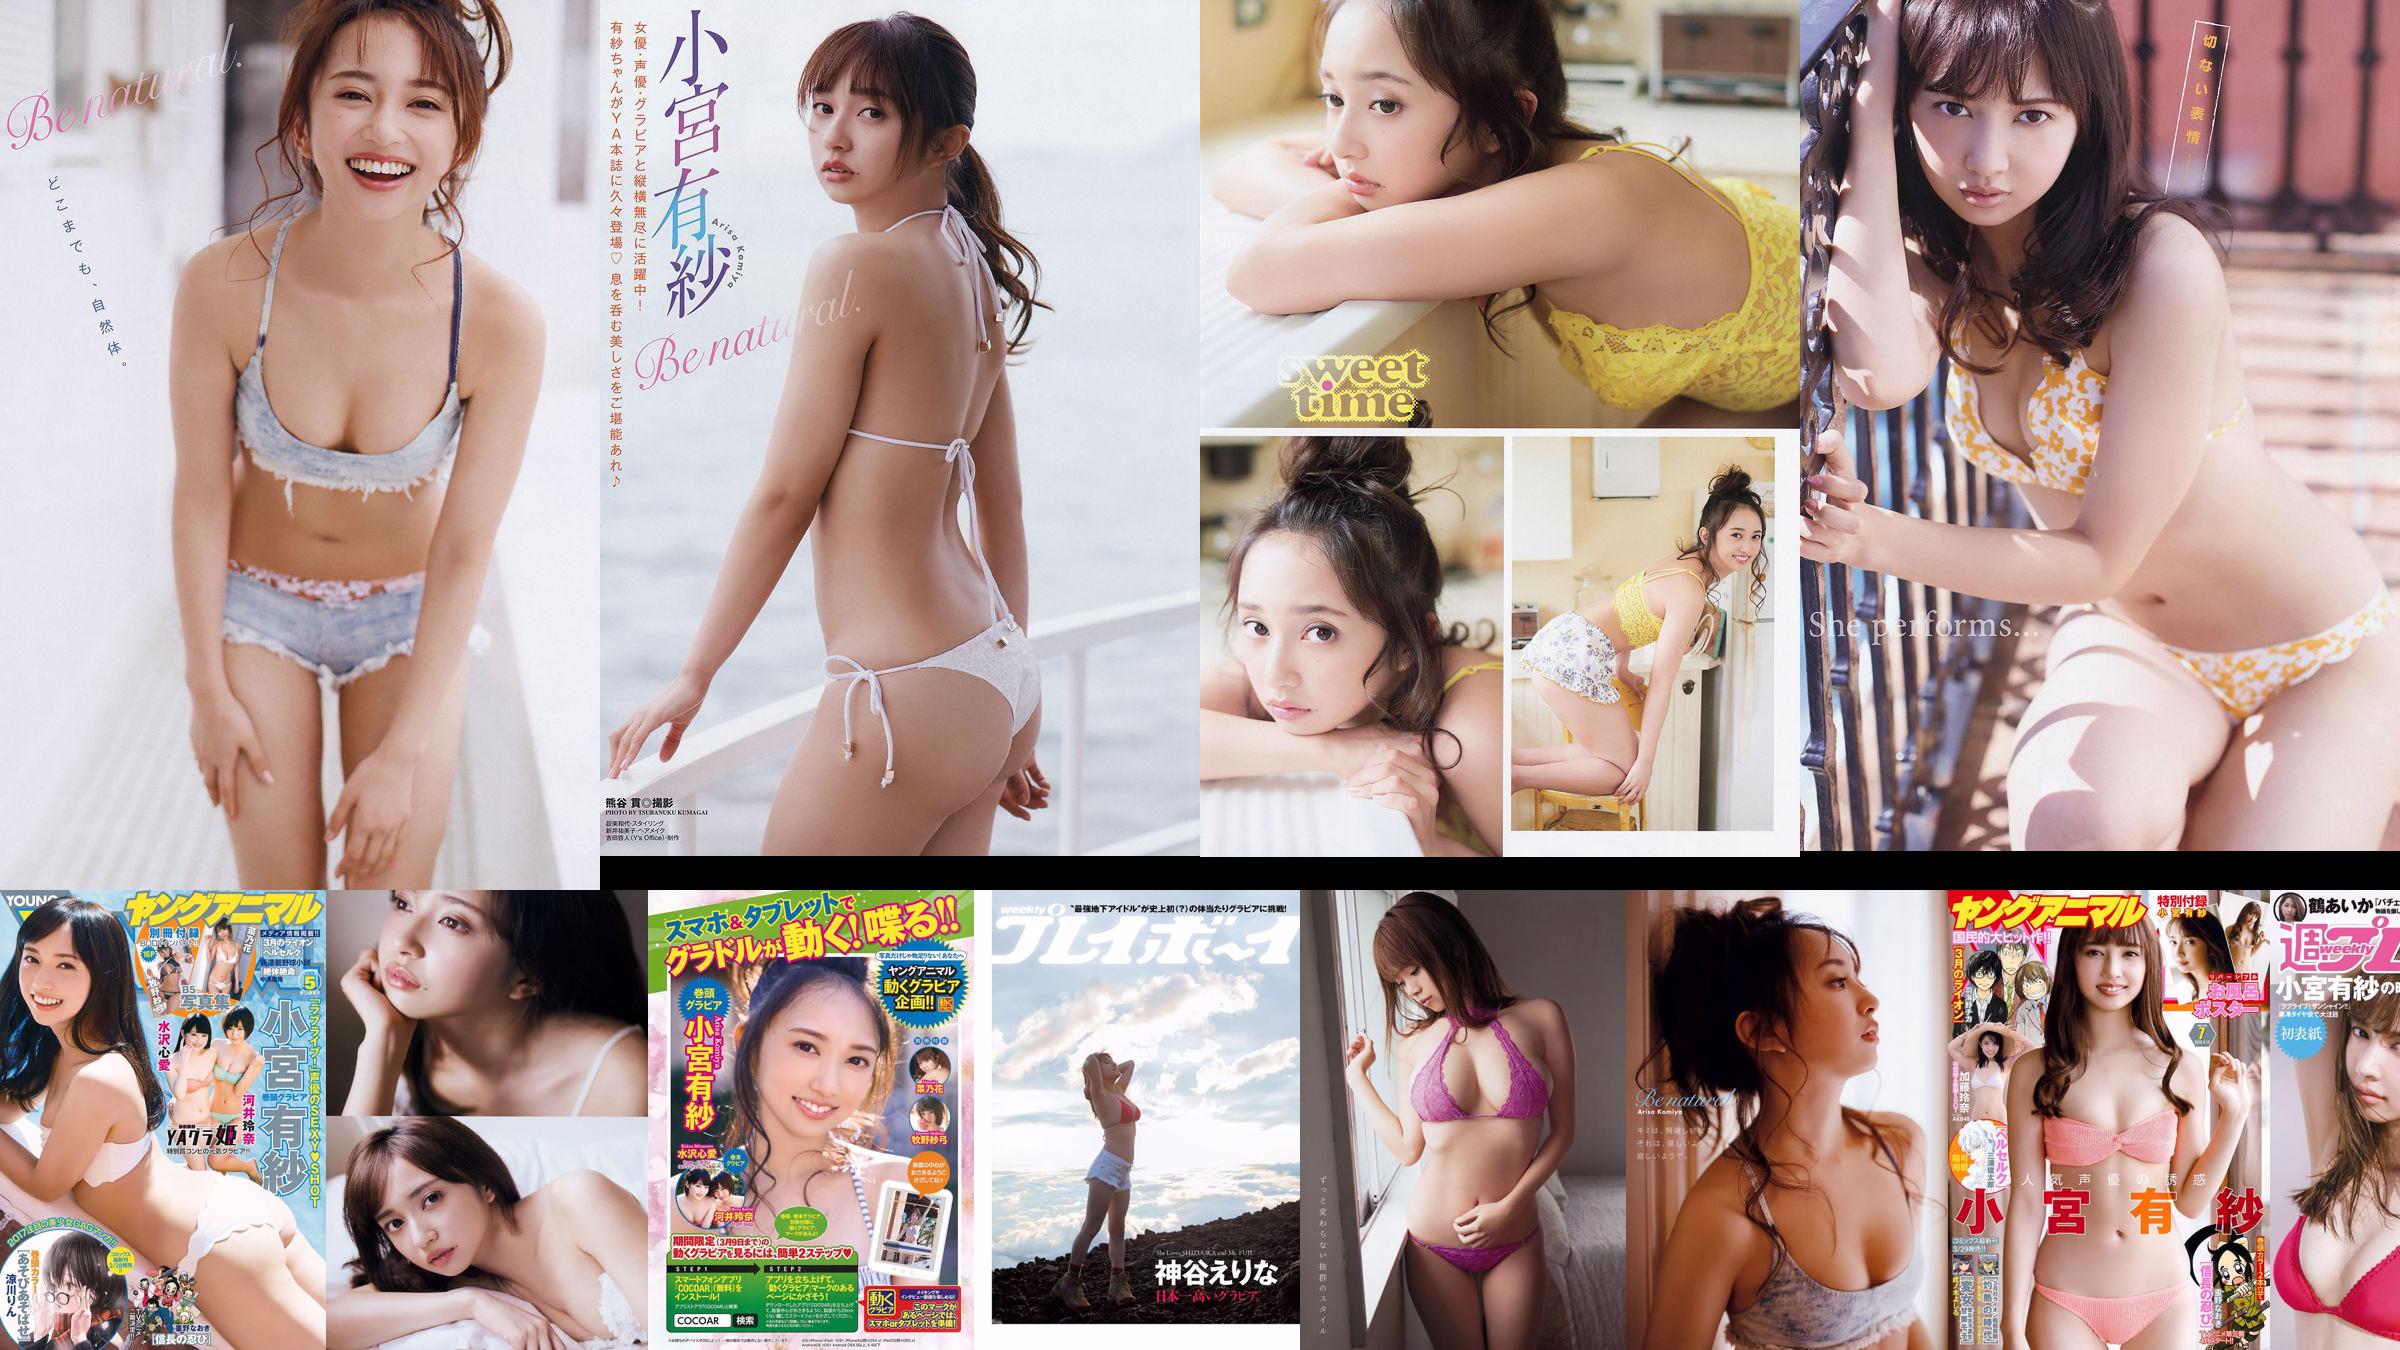 Arisa Komiya Rena Kato [Jungtier] 2018 No.07 Fotomagazin No.7210e5 Seite 1